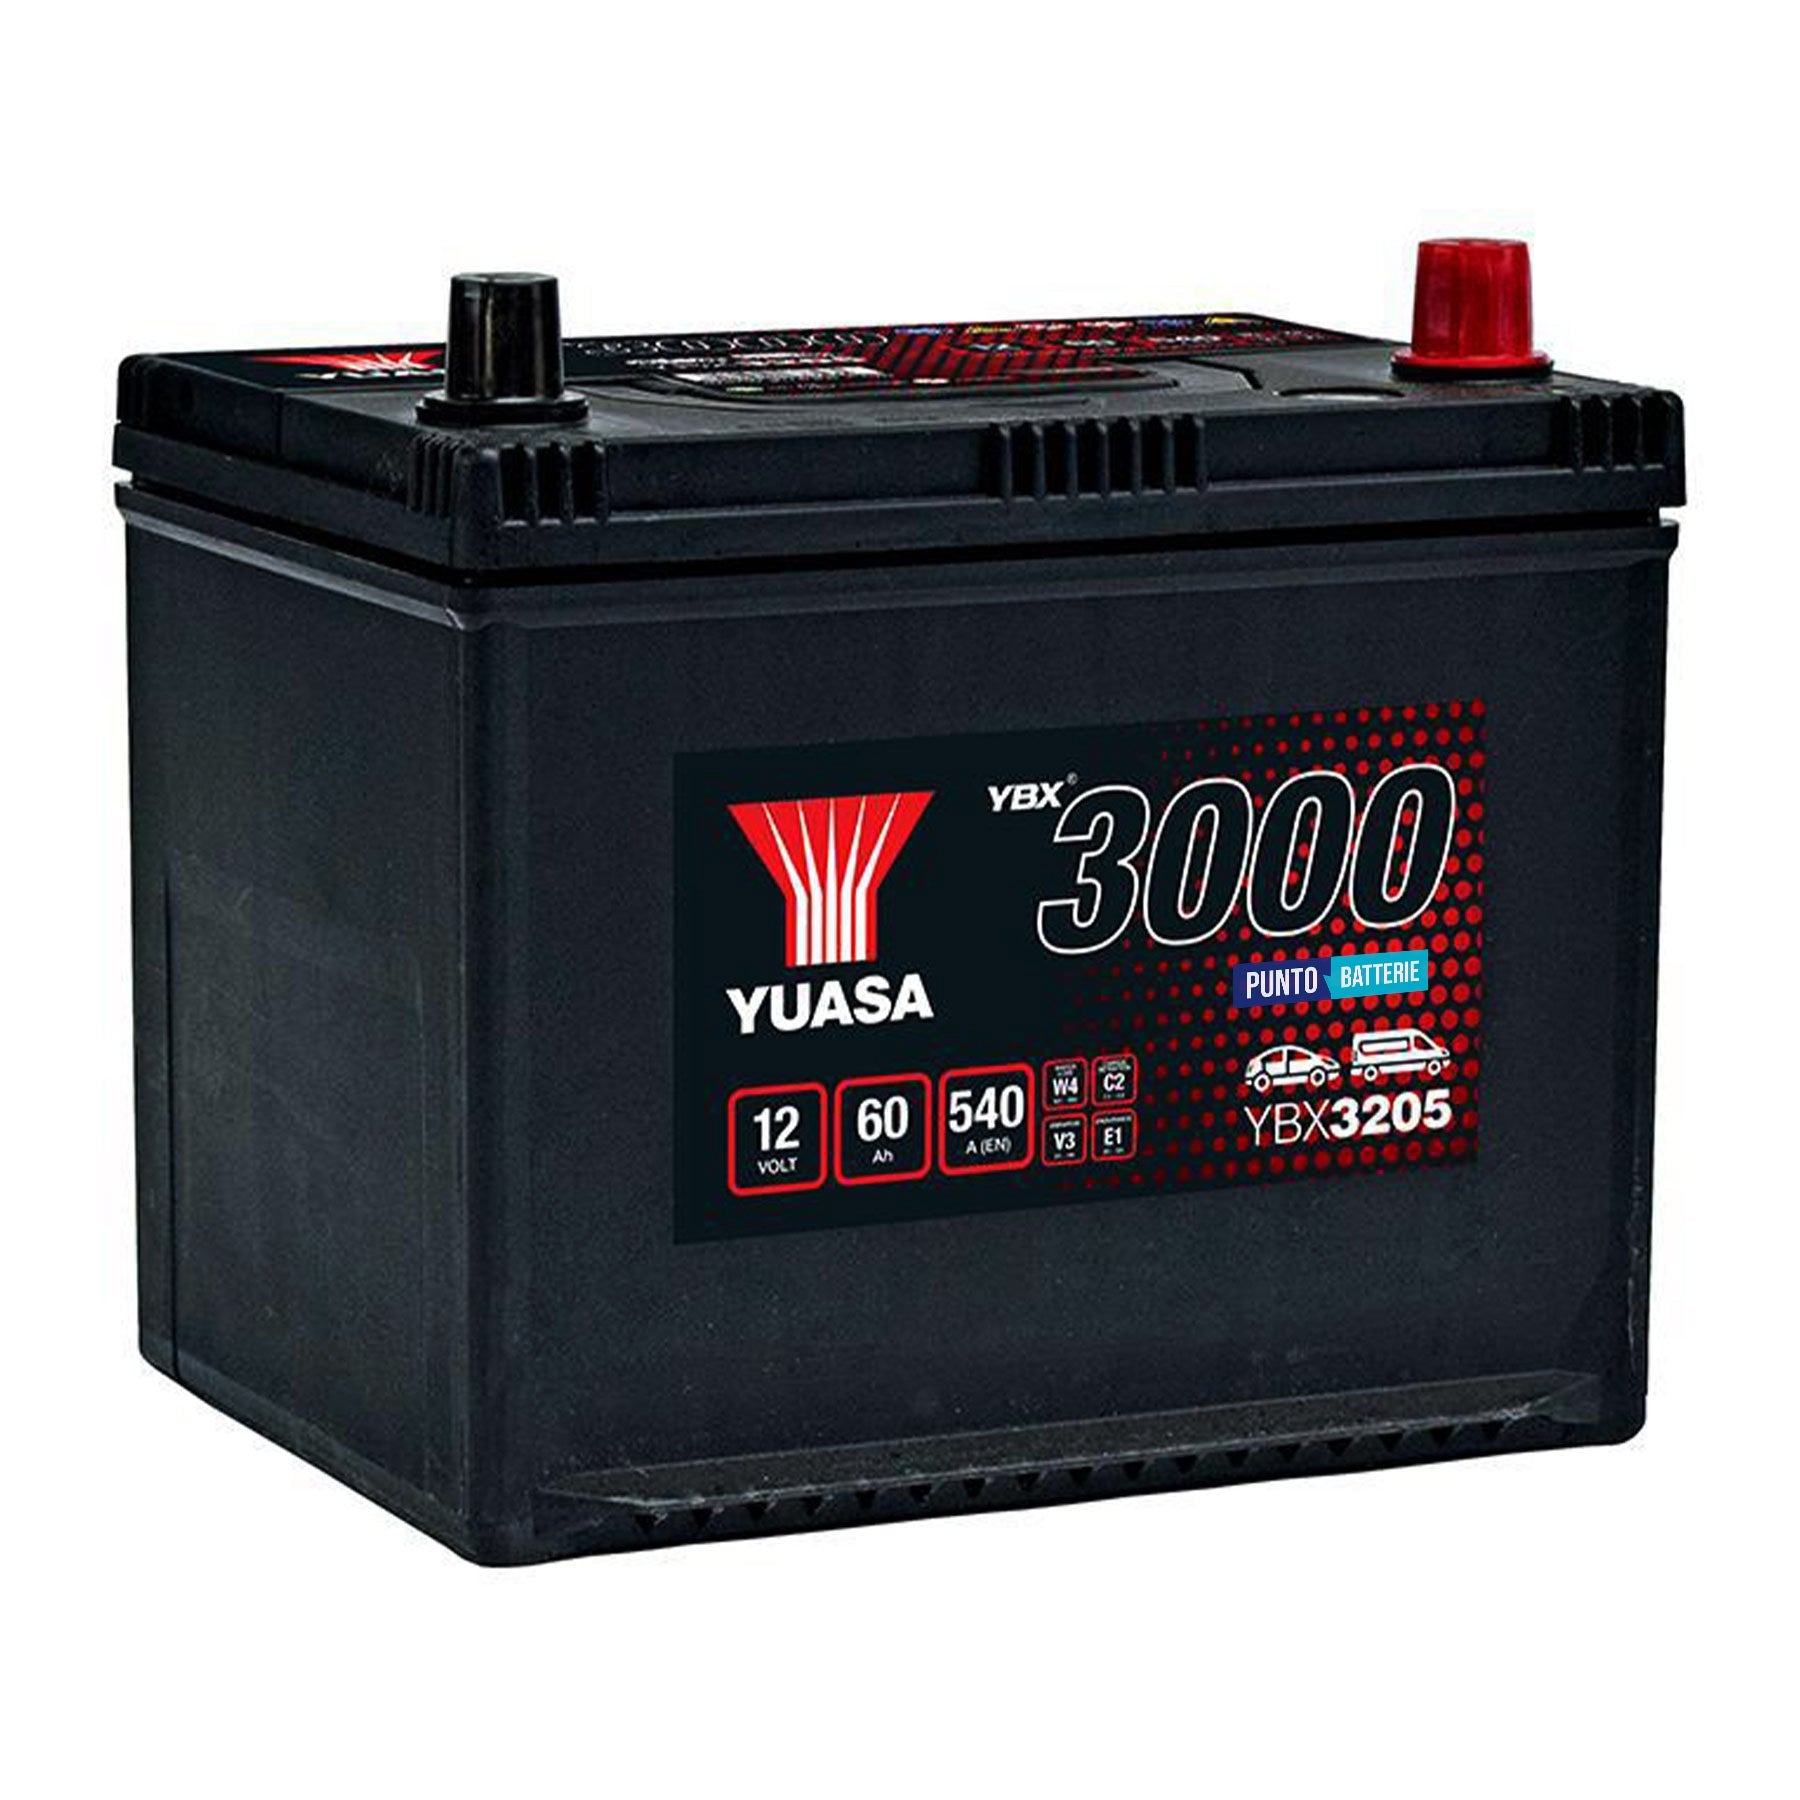 Batteria originale Yuasa YBX3000 YBX3205, dimensioni 230 x 174 x 205, polo positivo a destra, 12 volt, 60 amperora, 540 ampere. Batteria per auto e veicoli leggeri.